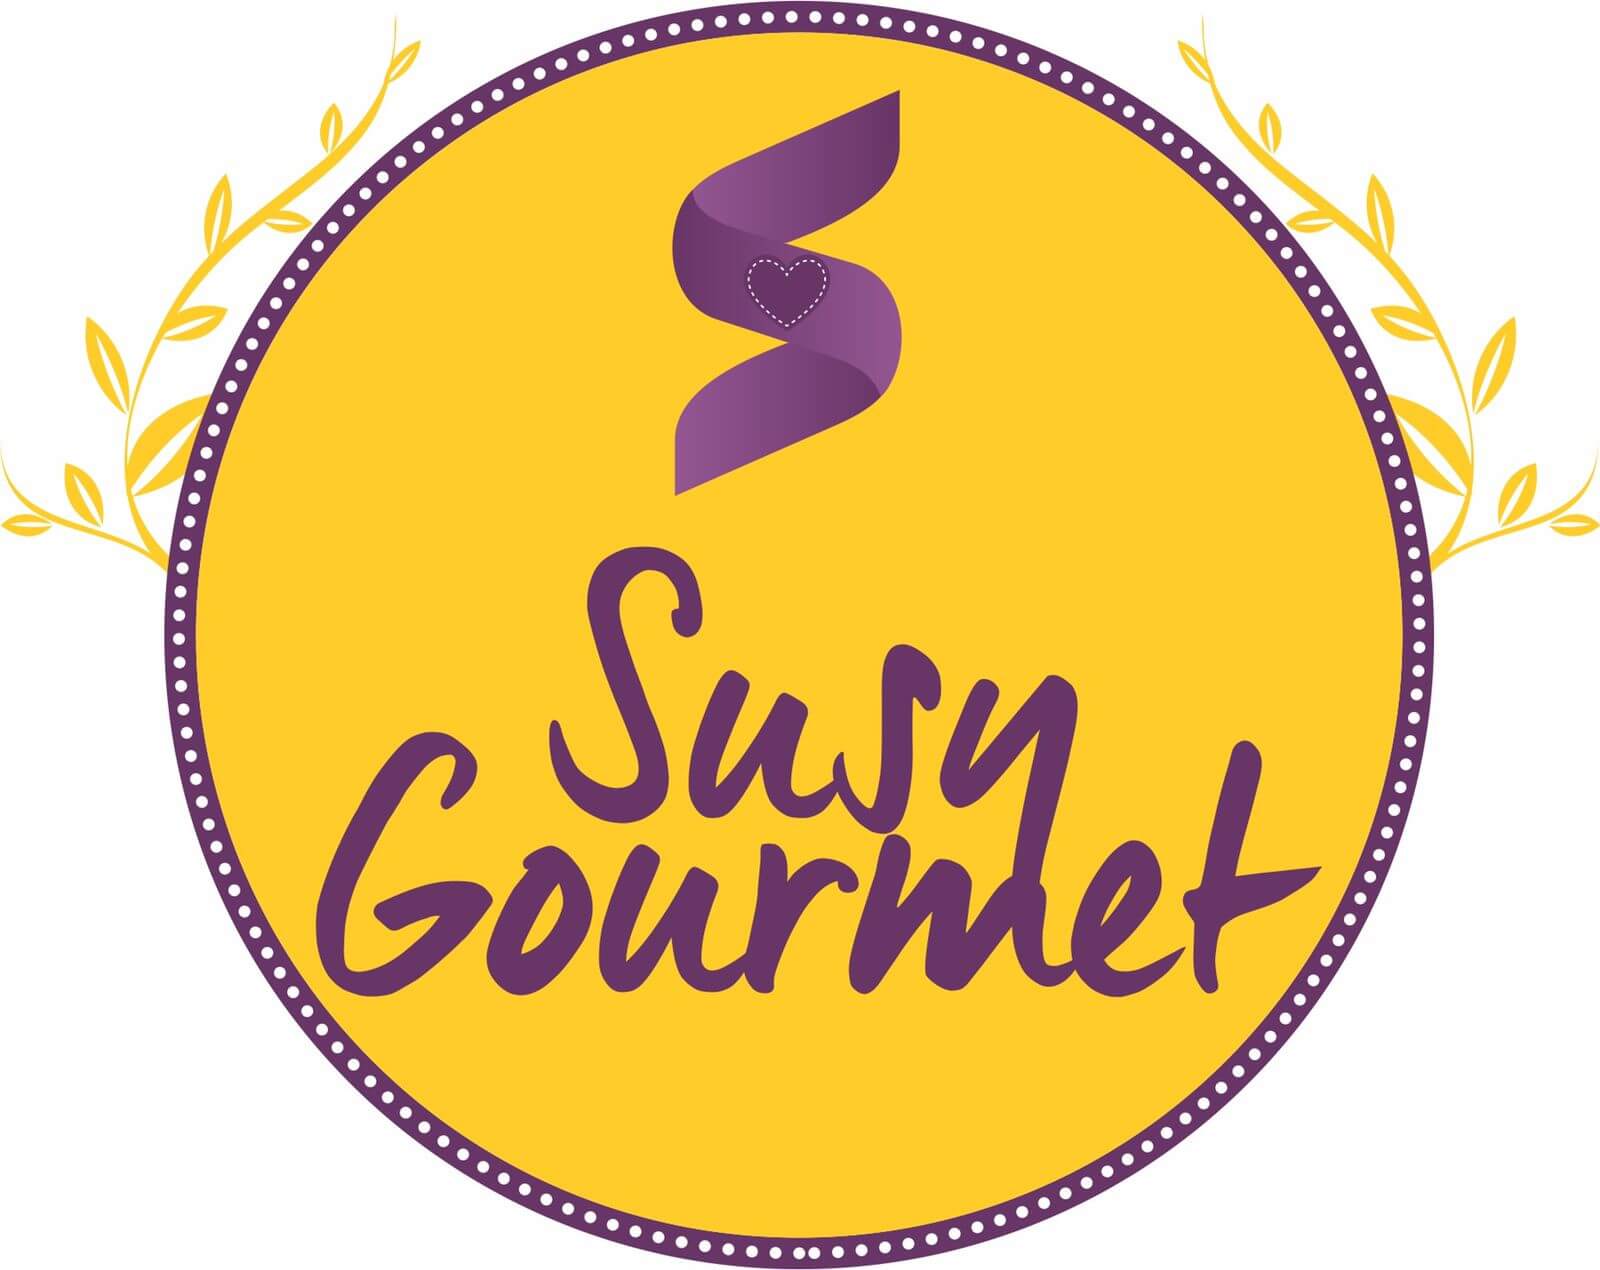 Susy Gourmet, rapidez y calidad en el servicio, al natural